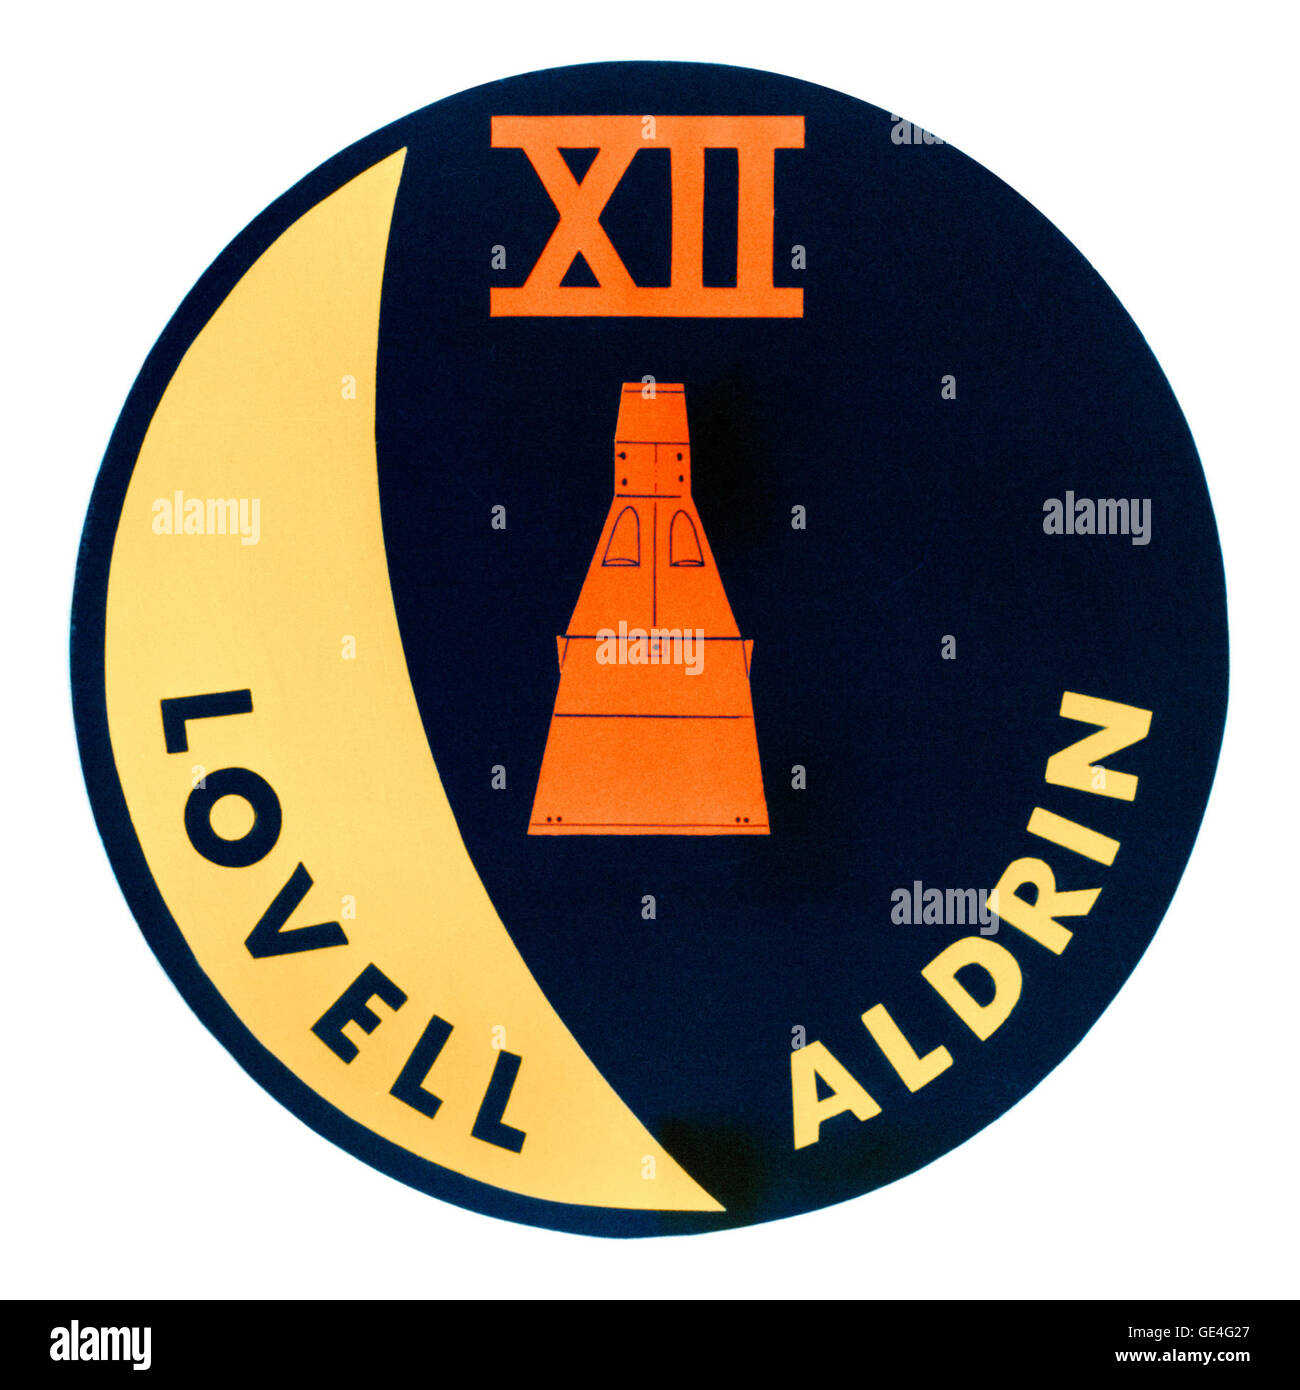 Novembre 11-15, 1966 - 3 giorni, 22 ore, 34 minuti, 31 secondi gli astronauti - James A. Lovell, Jr. (Comandante), Edwin E. Aldrin, Jr. (pilota) Gemini XII missione è stata la missione finale del programma Gemini. Gemini XII rendezvoused e inserito con GATV-12 e mantenuto alla stazione con esso durante la EVA. Aldrin impostare un EVA record di 5 ore e trenta minuti. www-pao.ksc.nasa.gov/history/gemini/gemini-12/gemini12.htm http://www-pao.ksc.nasa.gov/history/gemini/gemini-12/gemini12.htm ( ) Foto Stock